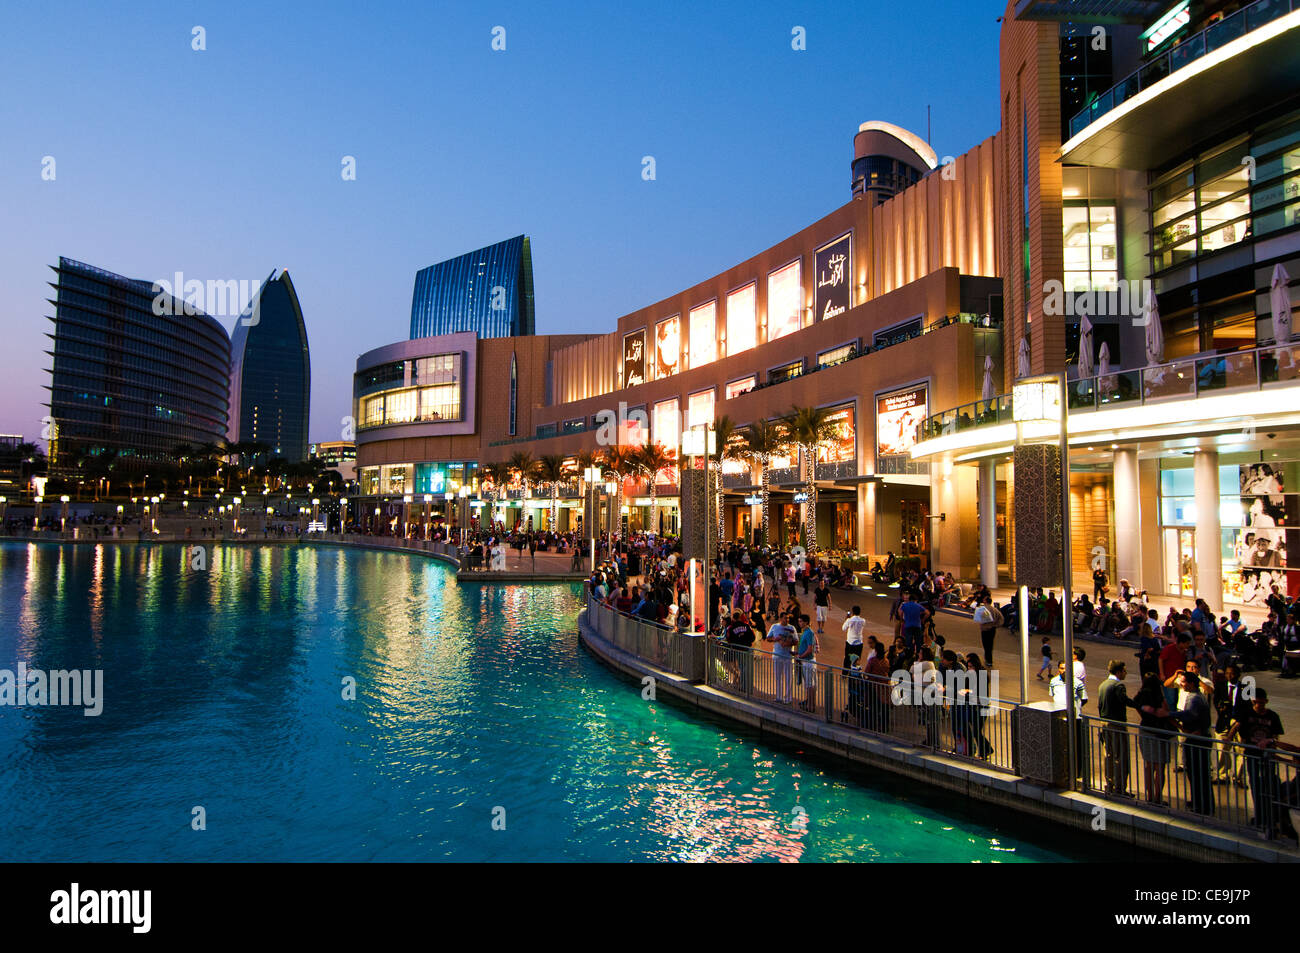 Dubai Mall, Dubai, United Arab Emirates Stock Photo